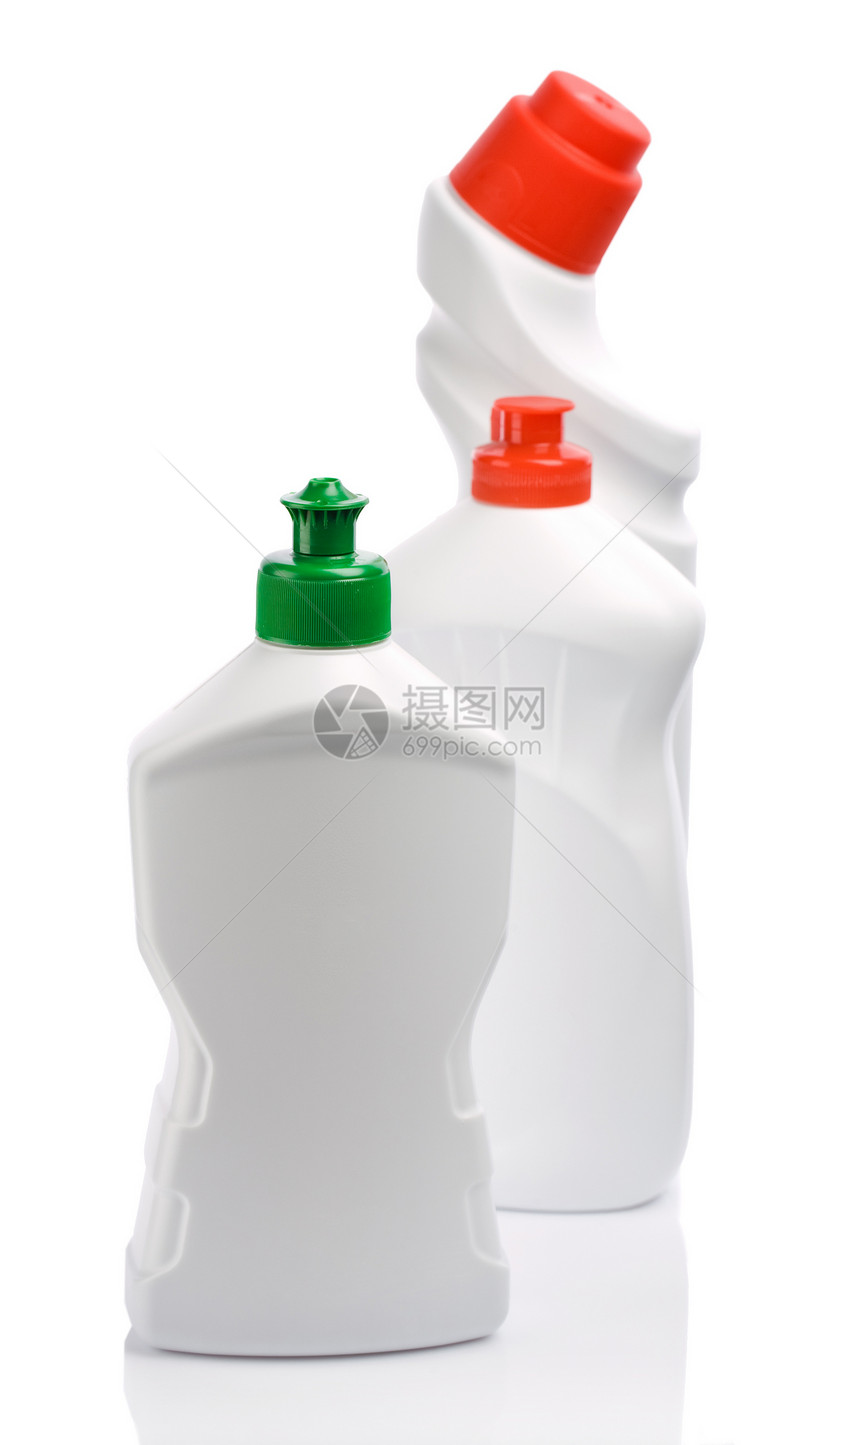 清洁用瓶瓶子塑料家务化学品洁净洗涤洗涤剂防腐剂红色喷涂图片